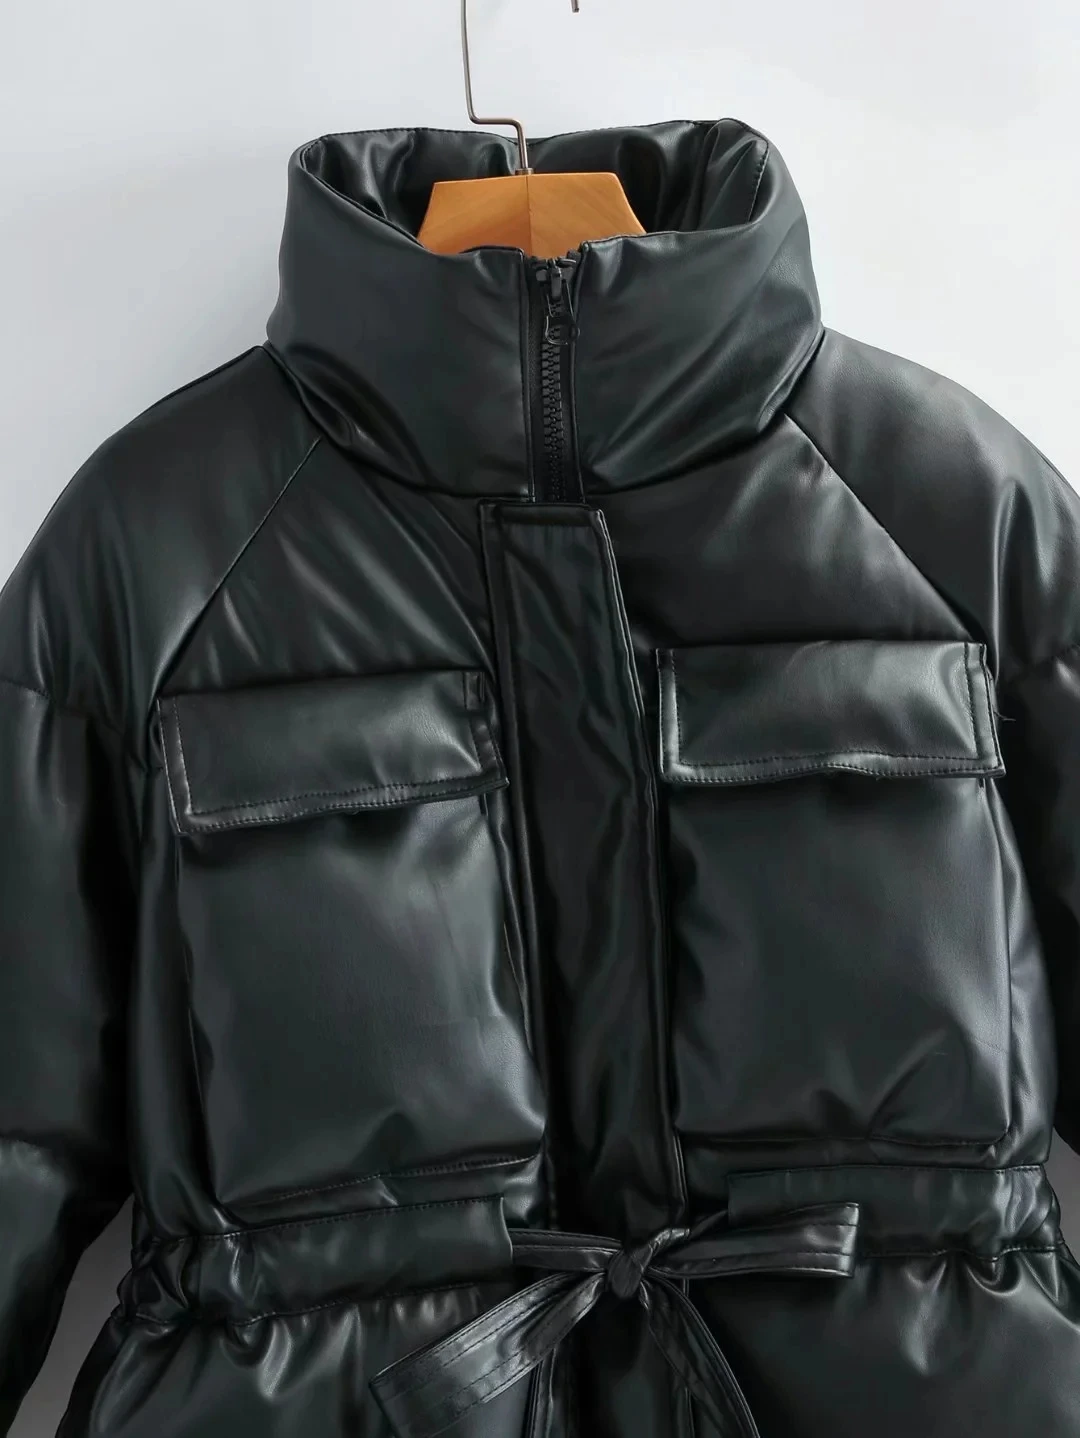 Winter black Padded PU jacket women faux leather coat Warm Long Sleeve Outwear Motorcycle Jacket female winter parka enlarge